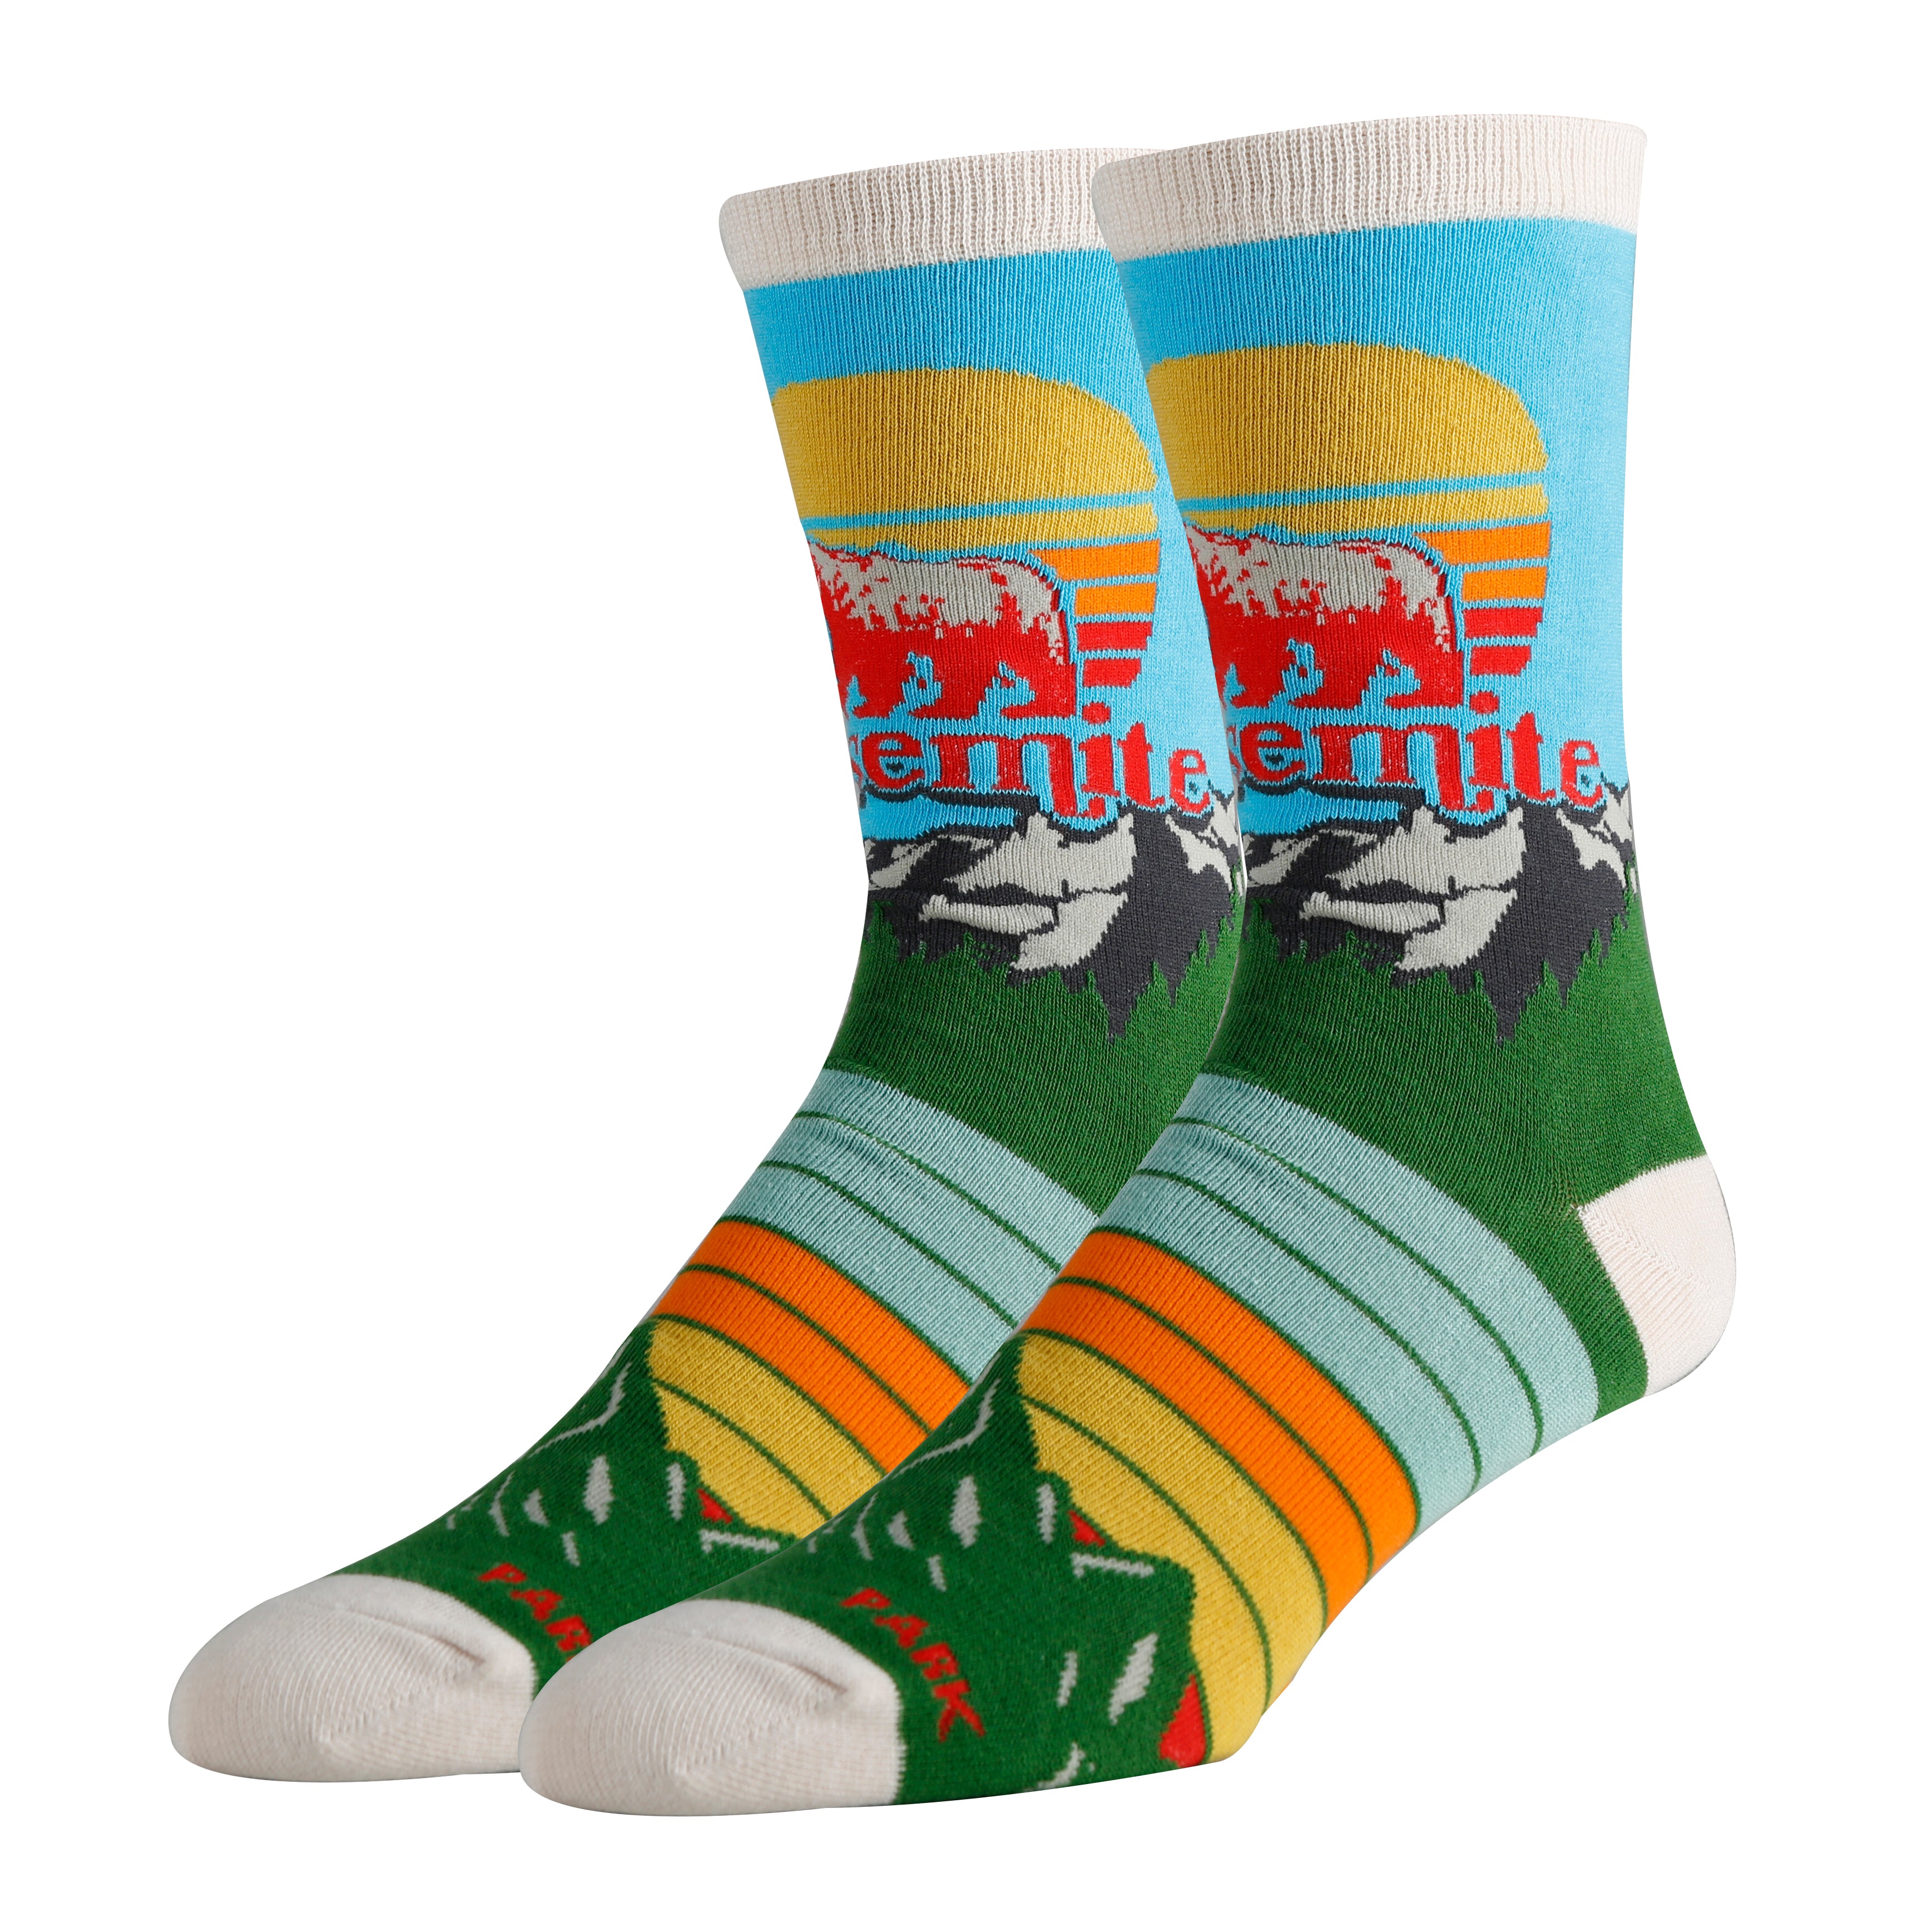 Yosemite Socks | Novelty Crew Socks For Men